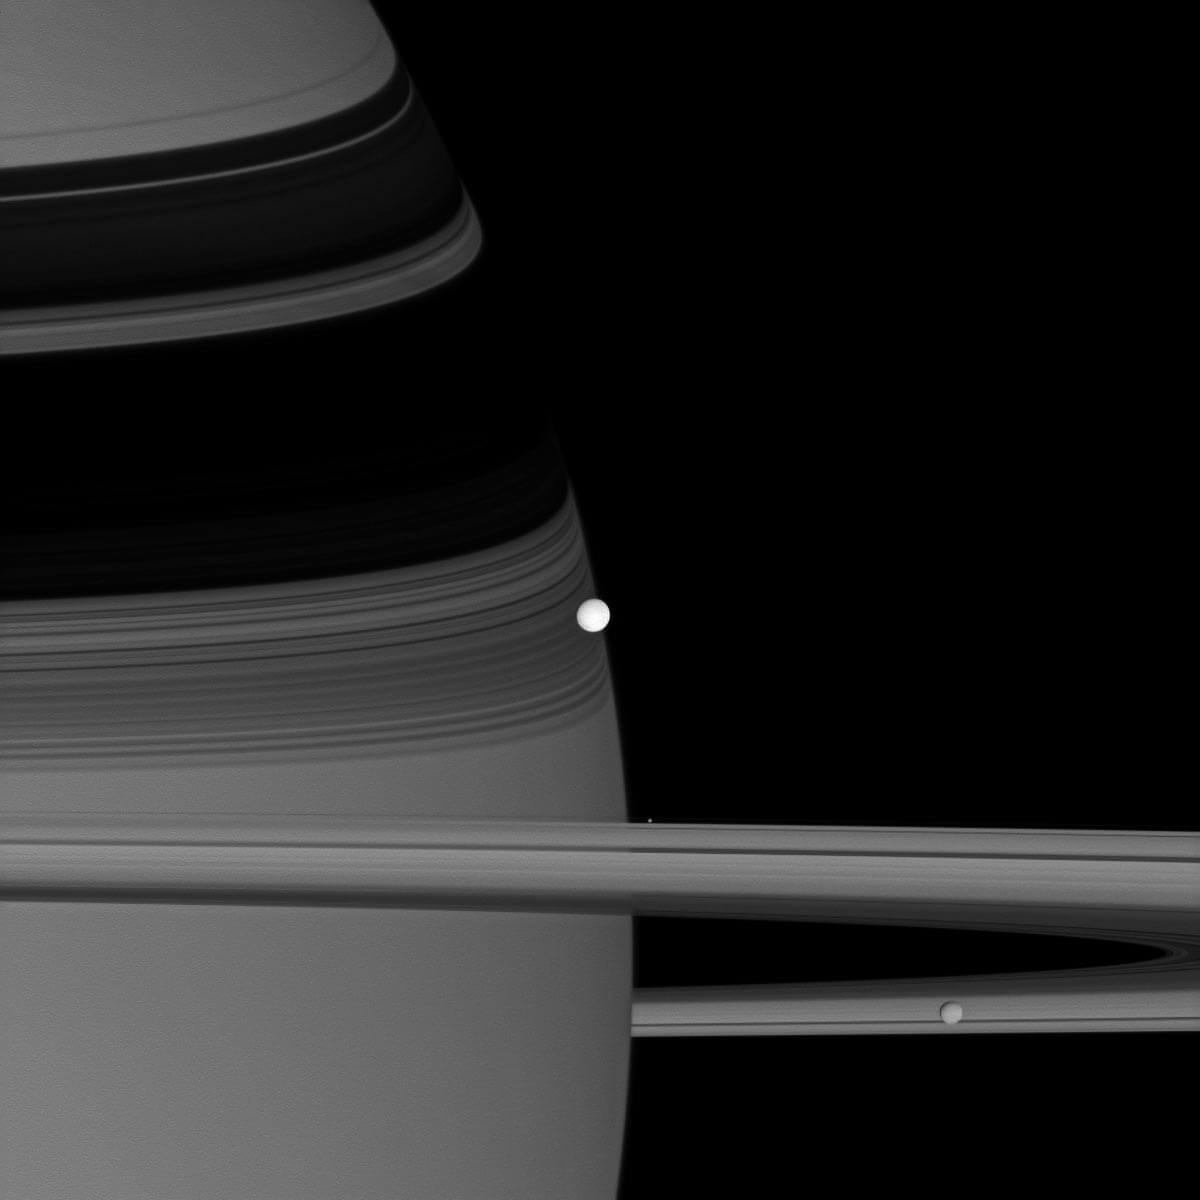 החללית קסיני של נאס"א צילמה את התמונה הזאת של אנקלדוס רפלקטיבי, הנראה במרכז, כשהוא מקיף את שבתאי. בתמונה הזאת מופיעים גם שני ירחים אחרים: פנדורה, כתם בהיר המרחף ליד הטבעות, ומימס, מימין למטה.